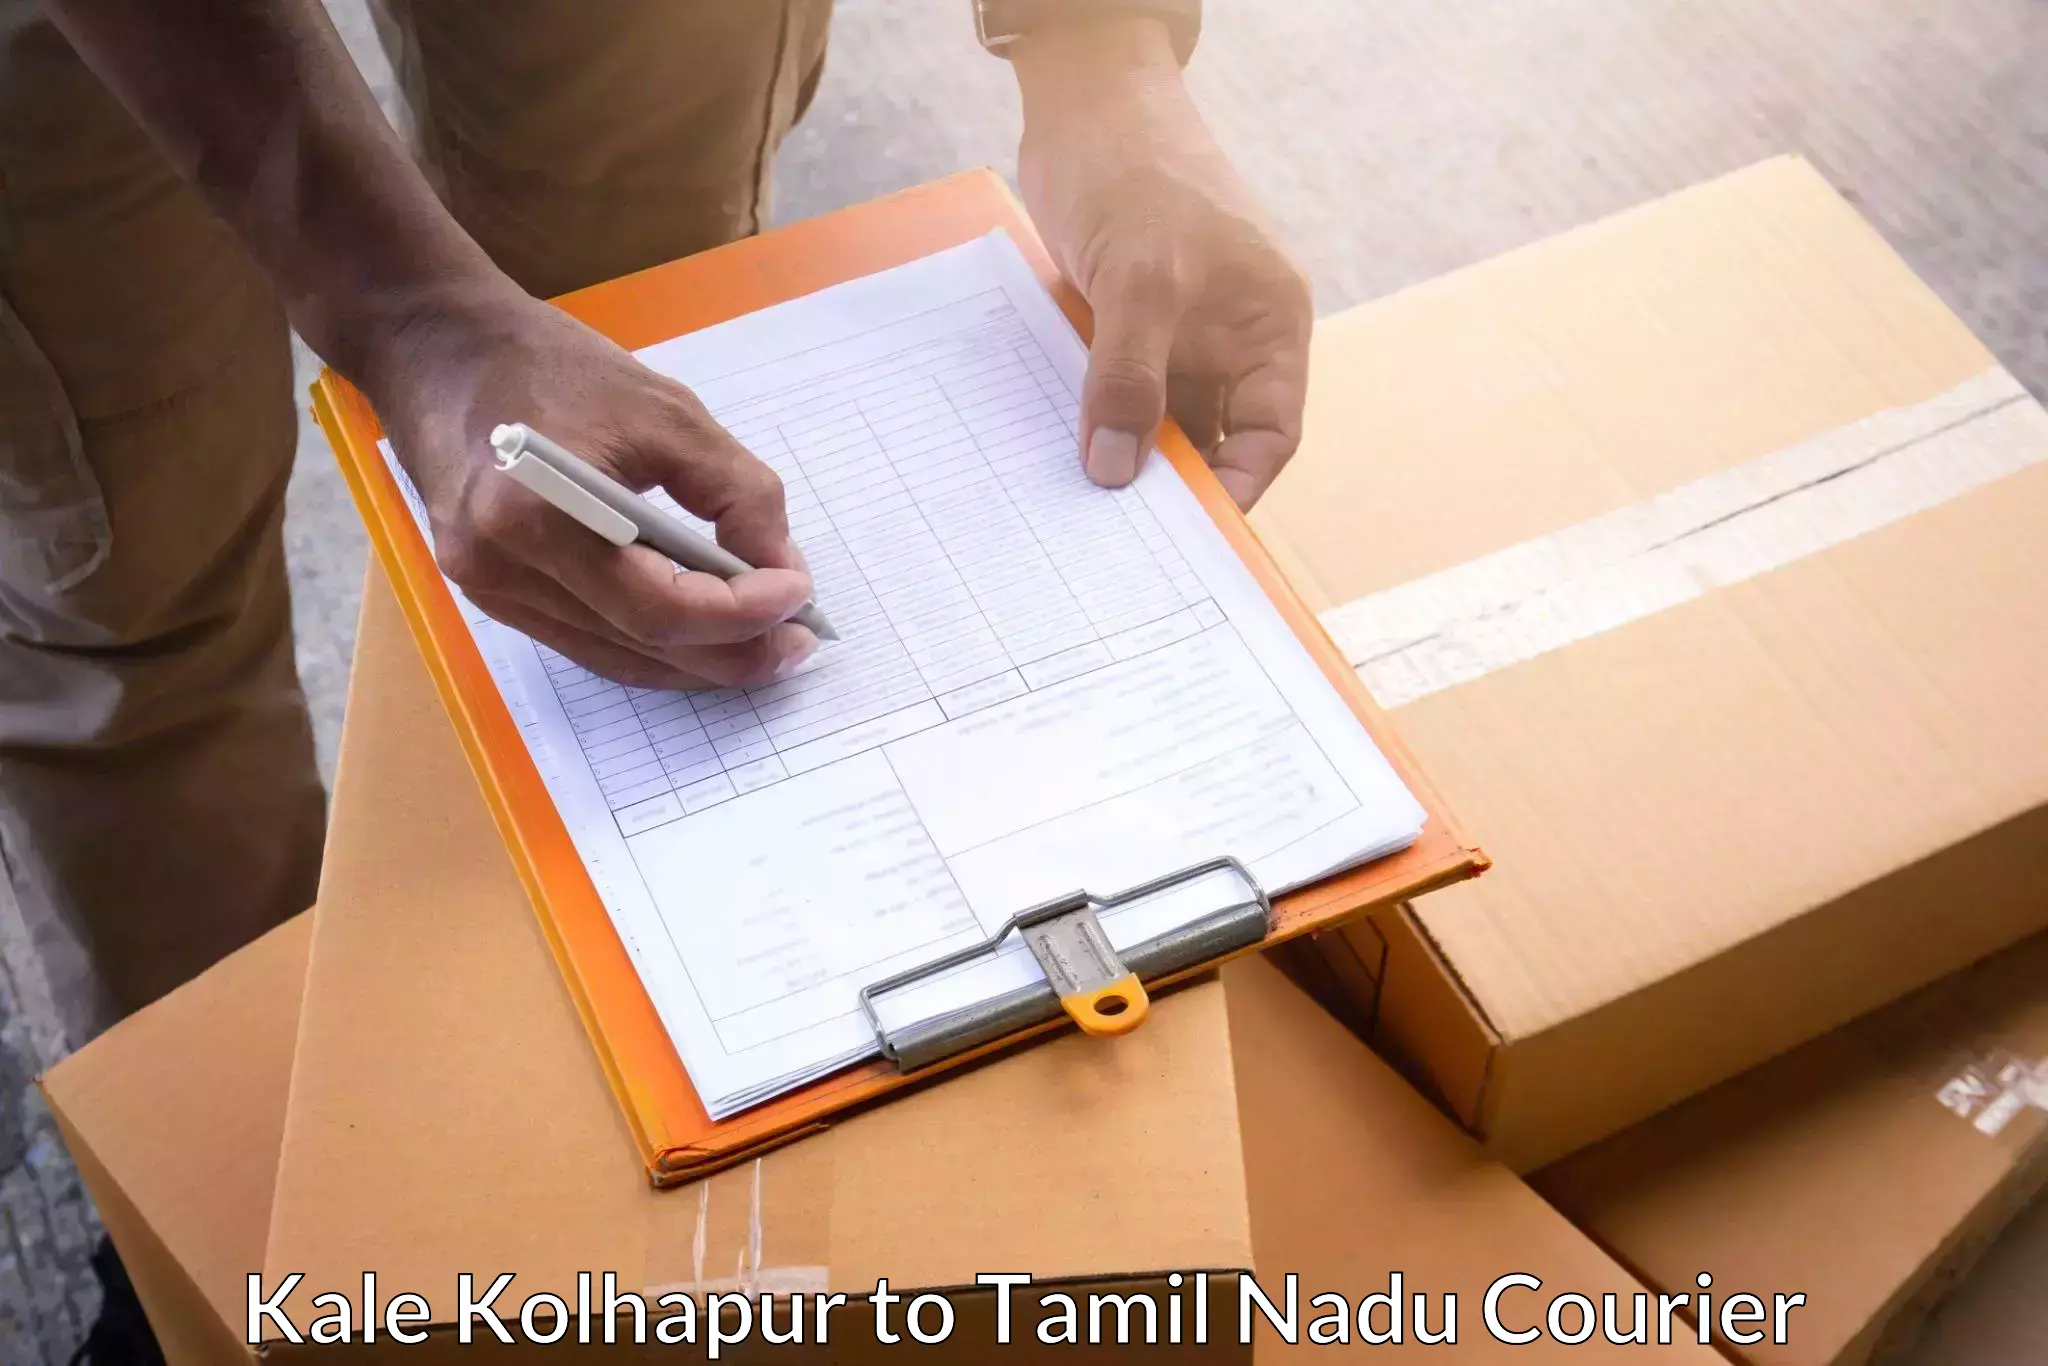 Door-to-door freight service Kale Kolhapur to Tamil Nadu